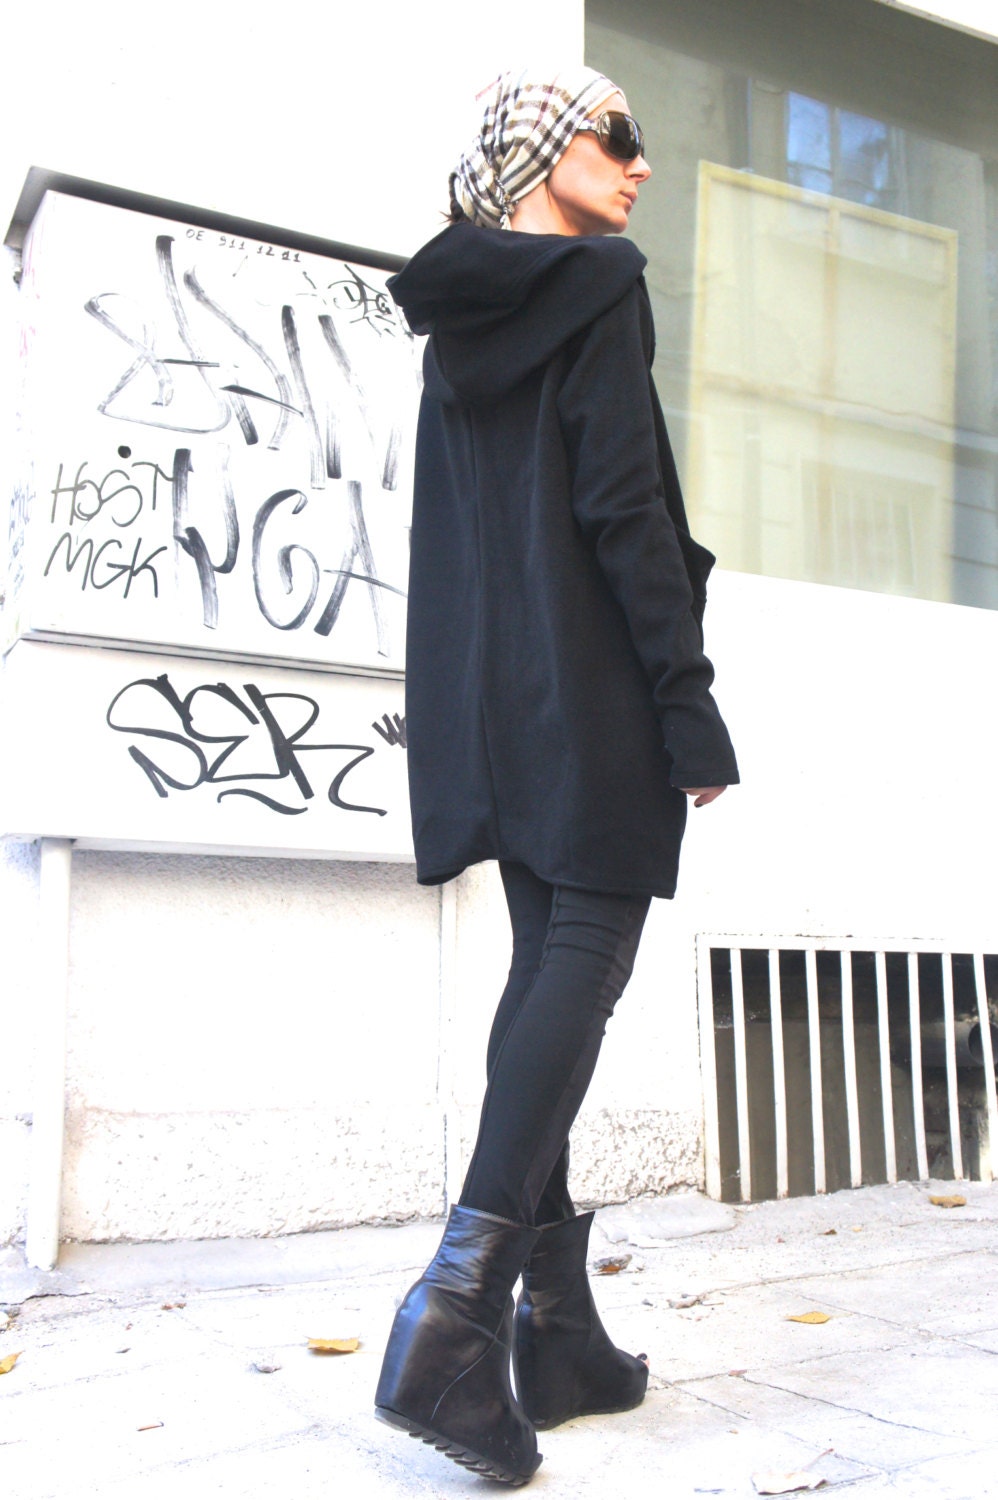 Autumn / Winter Asymmetryc Extravagant Black Hoodded Coat / - Etsy